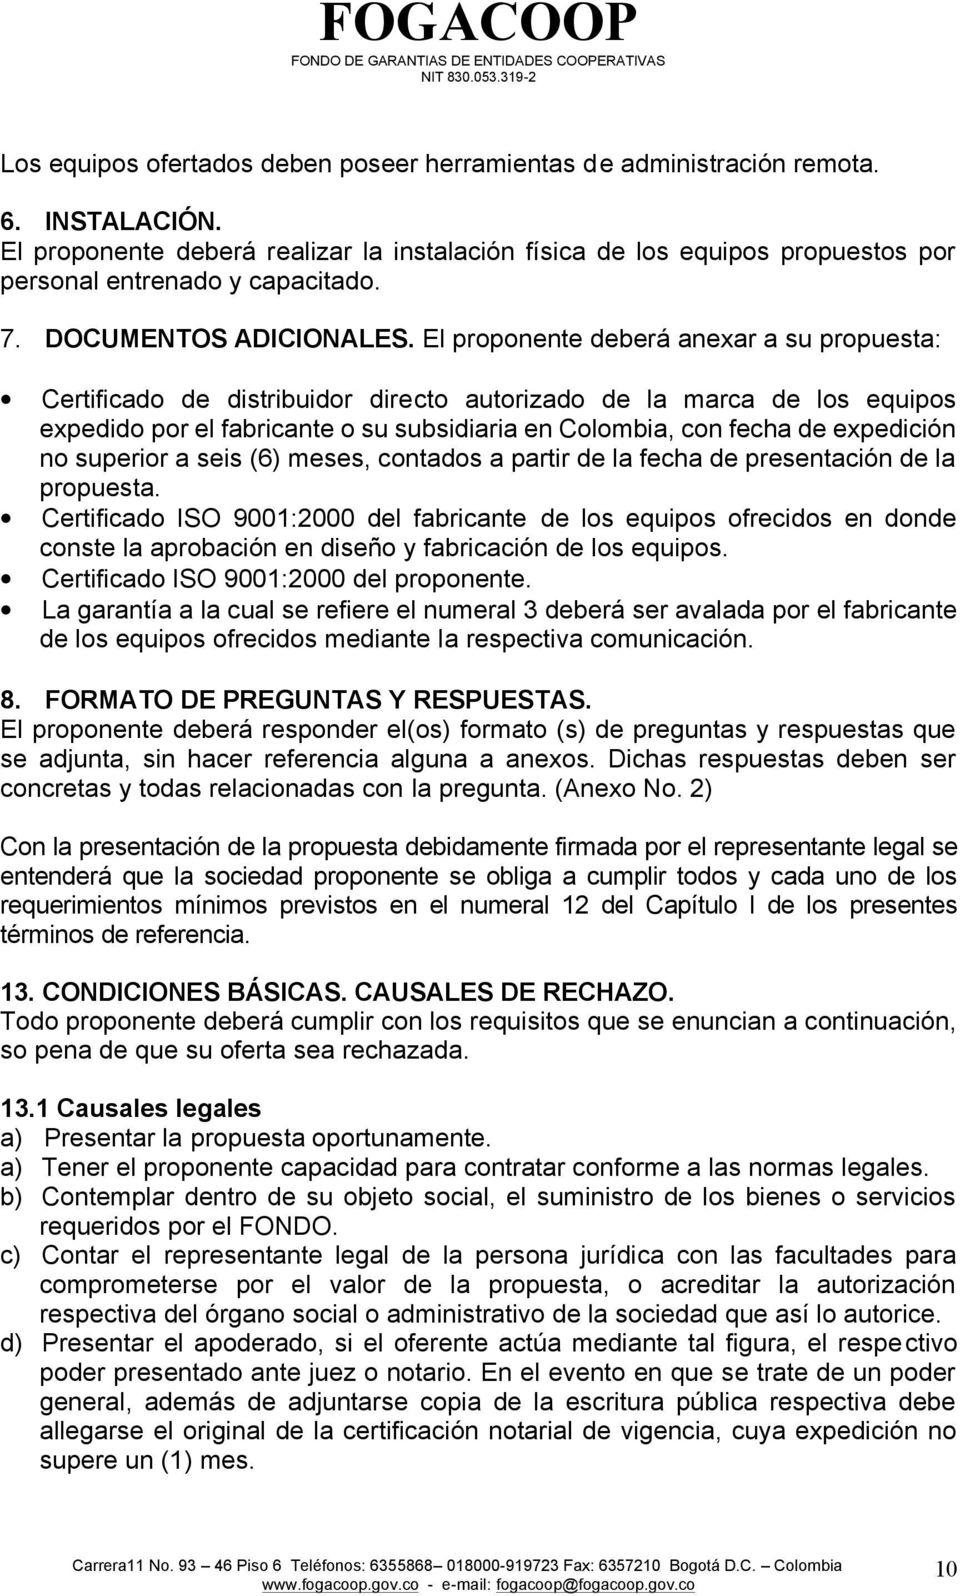 El proponente deberá anexar a su propuesta: Certificado de distribuidor directo autorizado de la marca de los equipos expedido por el fabricante o su subsidiaria en Colombia, con fecha de expedición